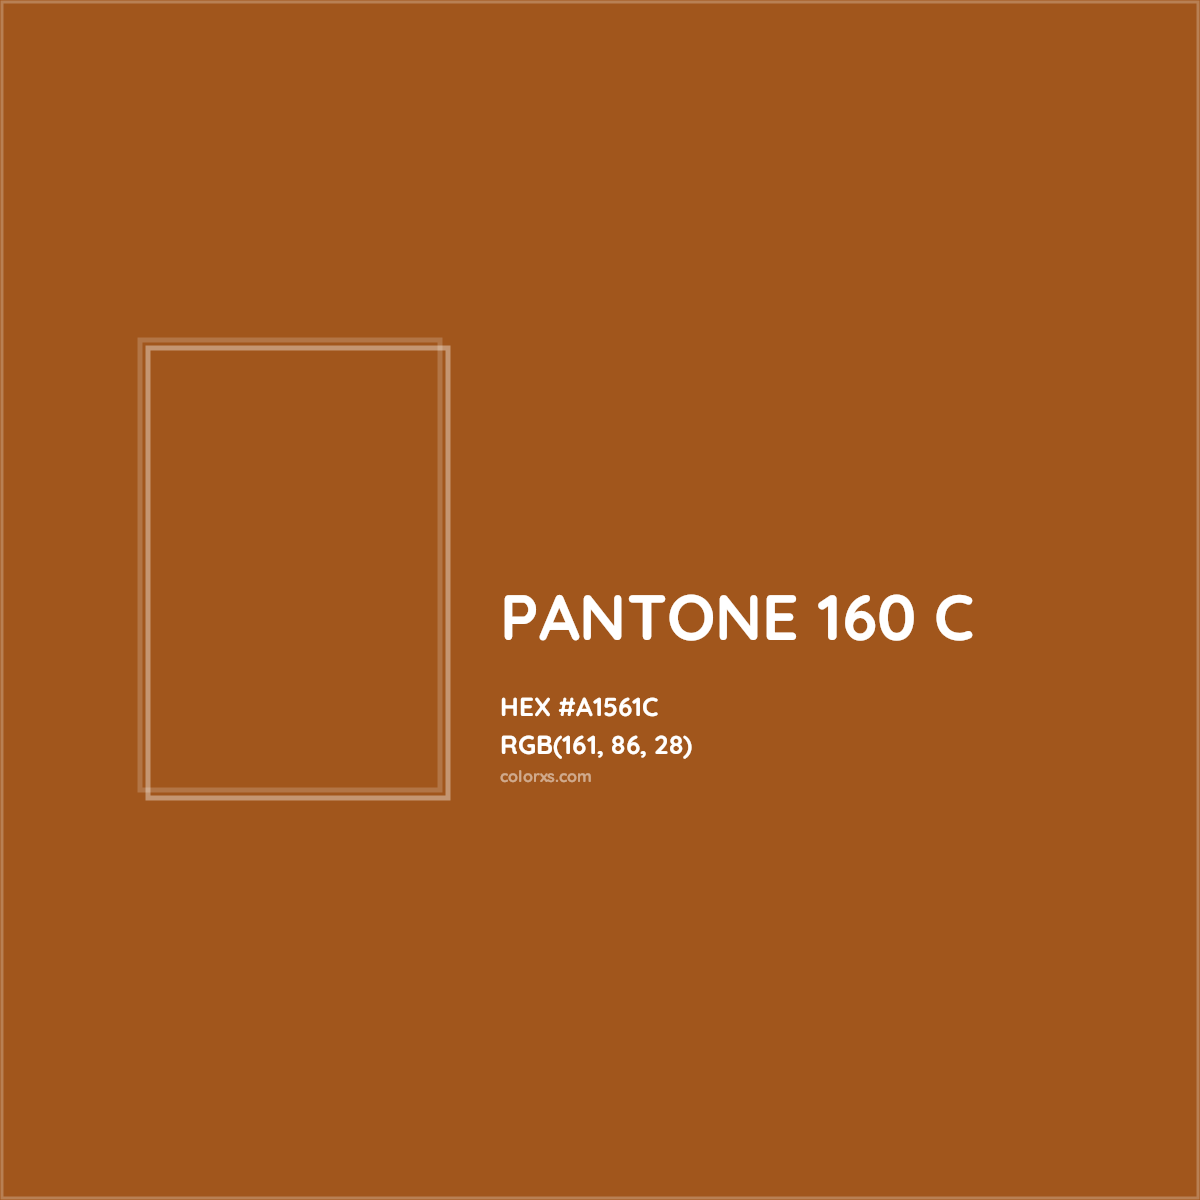 HEX #A1561C PANTONE 160 C CMS Pantone PMS - Color Code